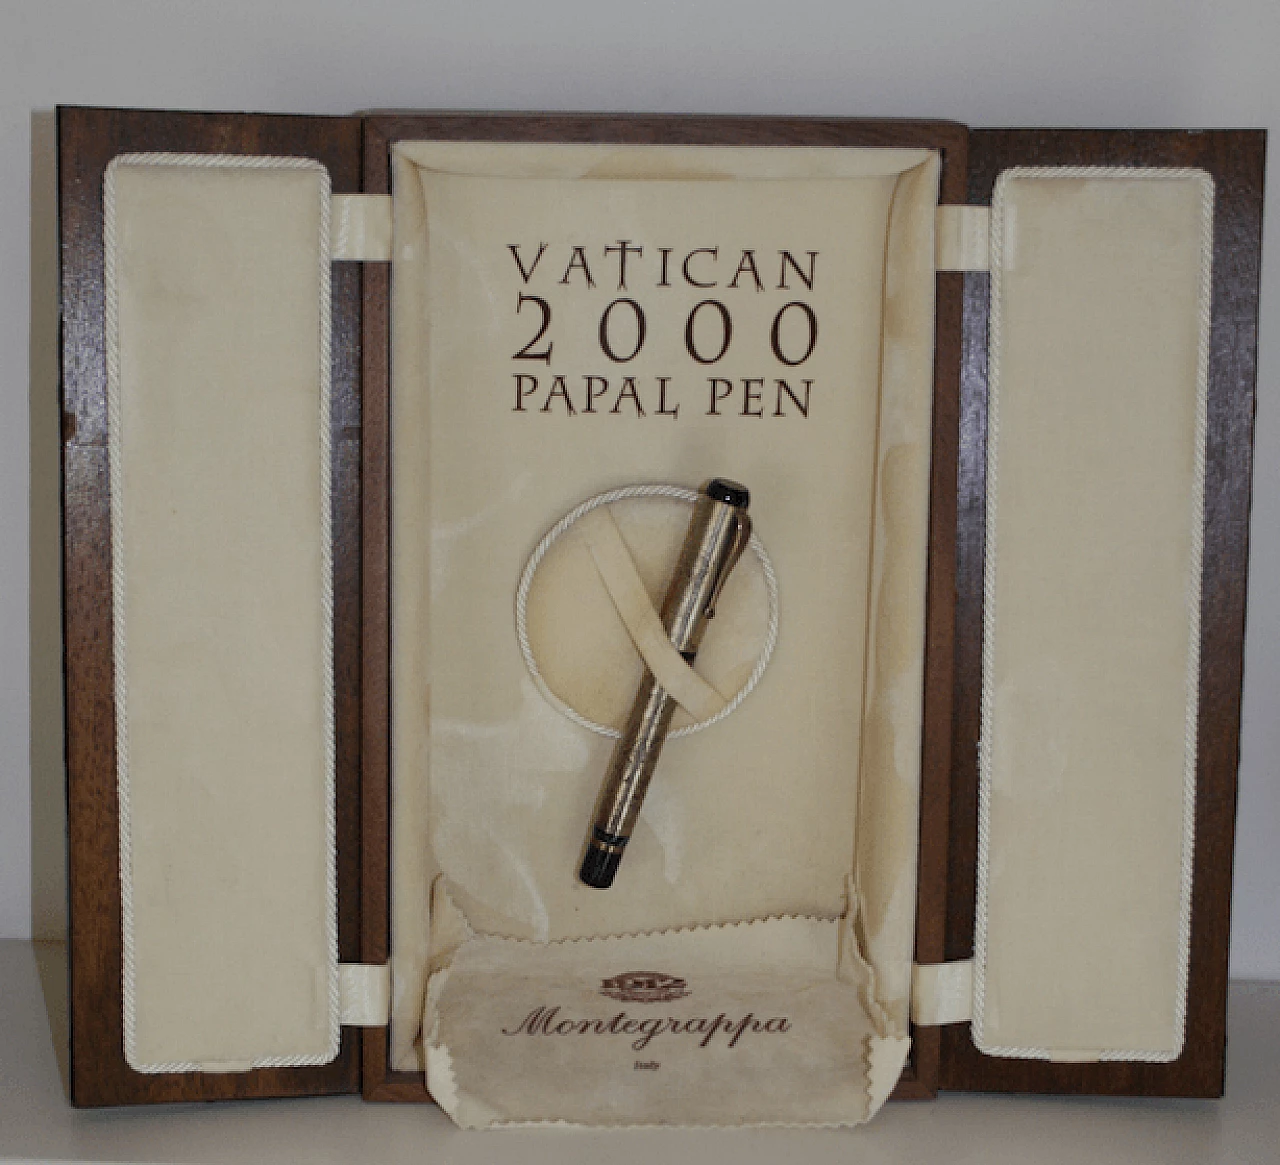 Montegrappa Fountain Pen Vatican 2000 Papal Pen 1067254